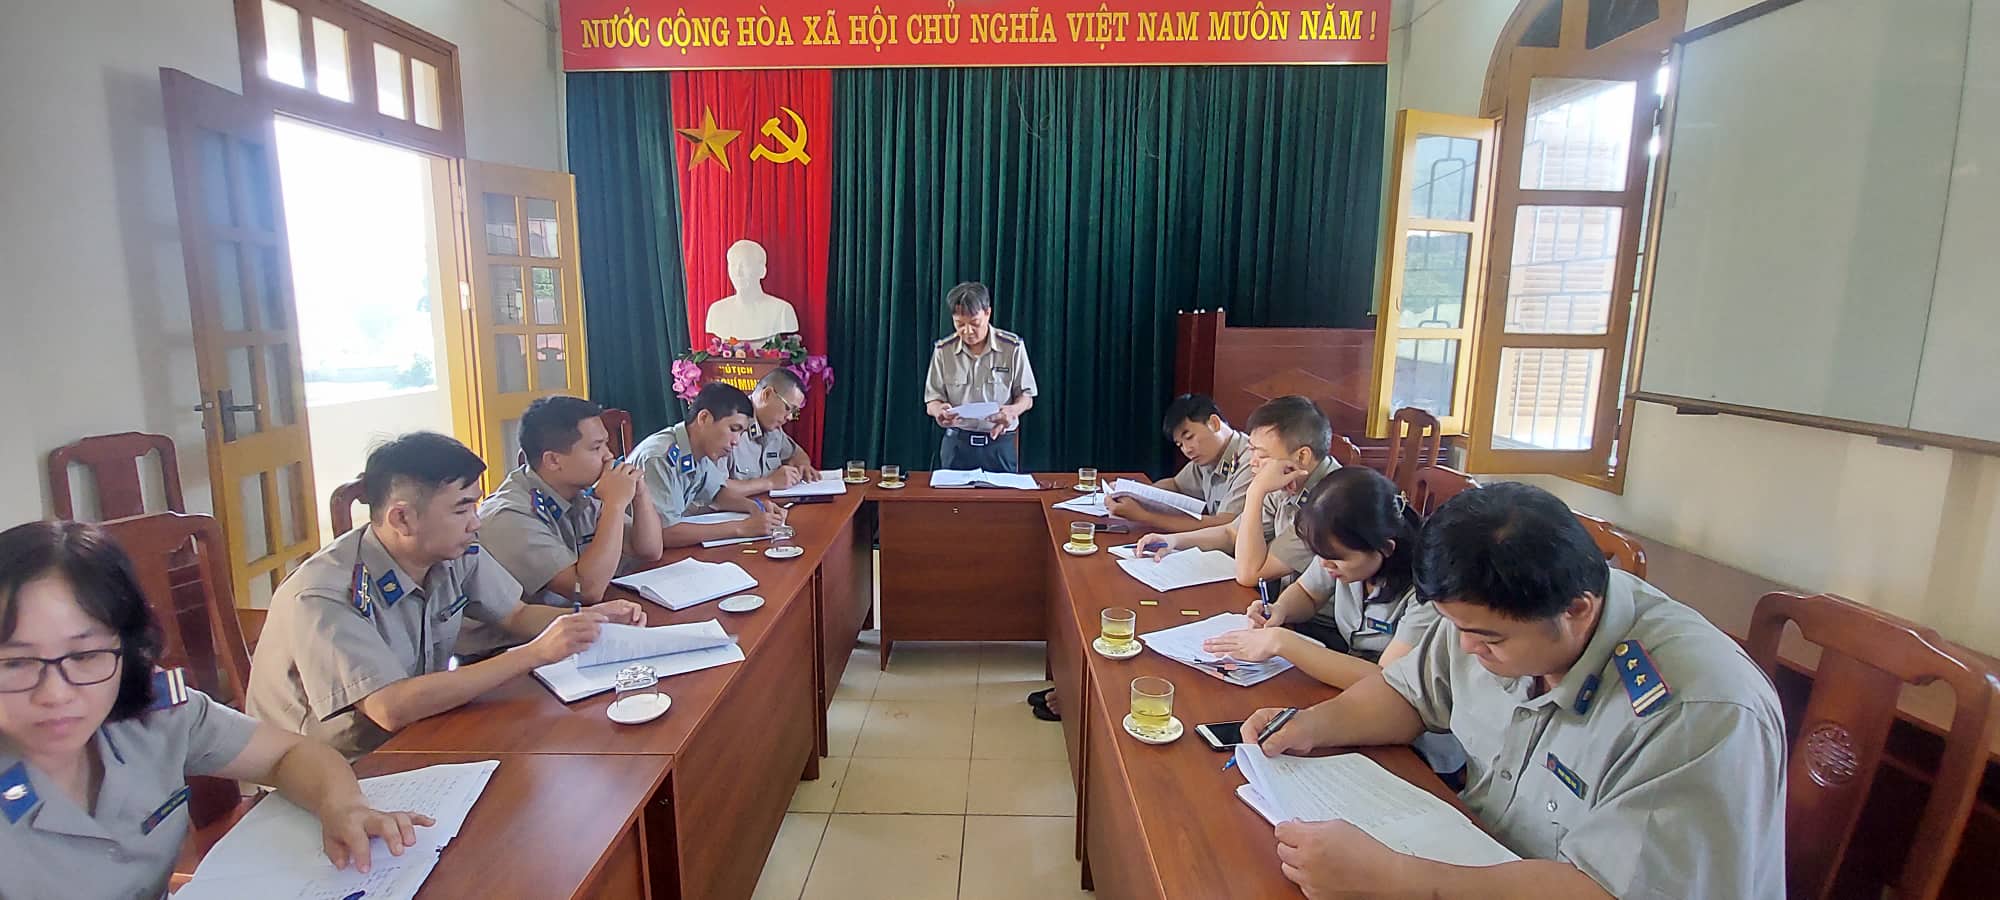 Cục Thi hành án dân sự tỉnh Cao Bằng thực hiện kiểm tra toàn diện công tác thi hành án dân sự tại Chi cục THADS huyện Nguyên Bình